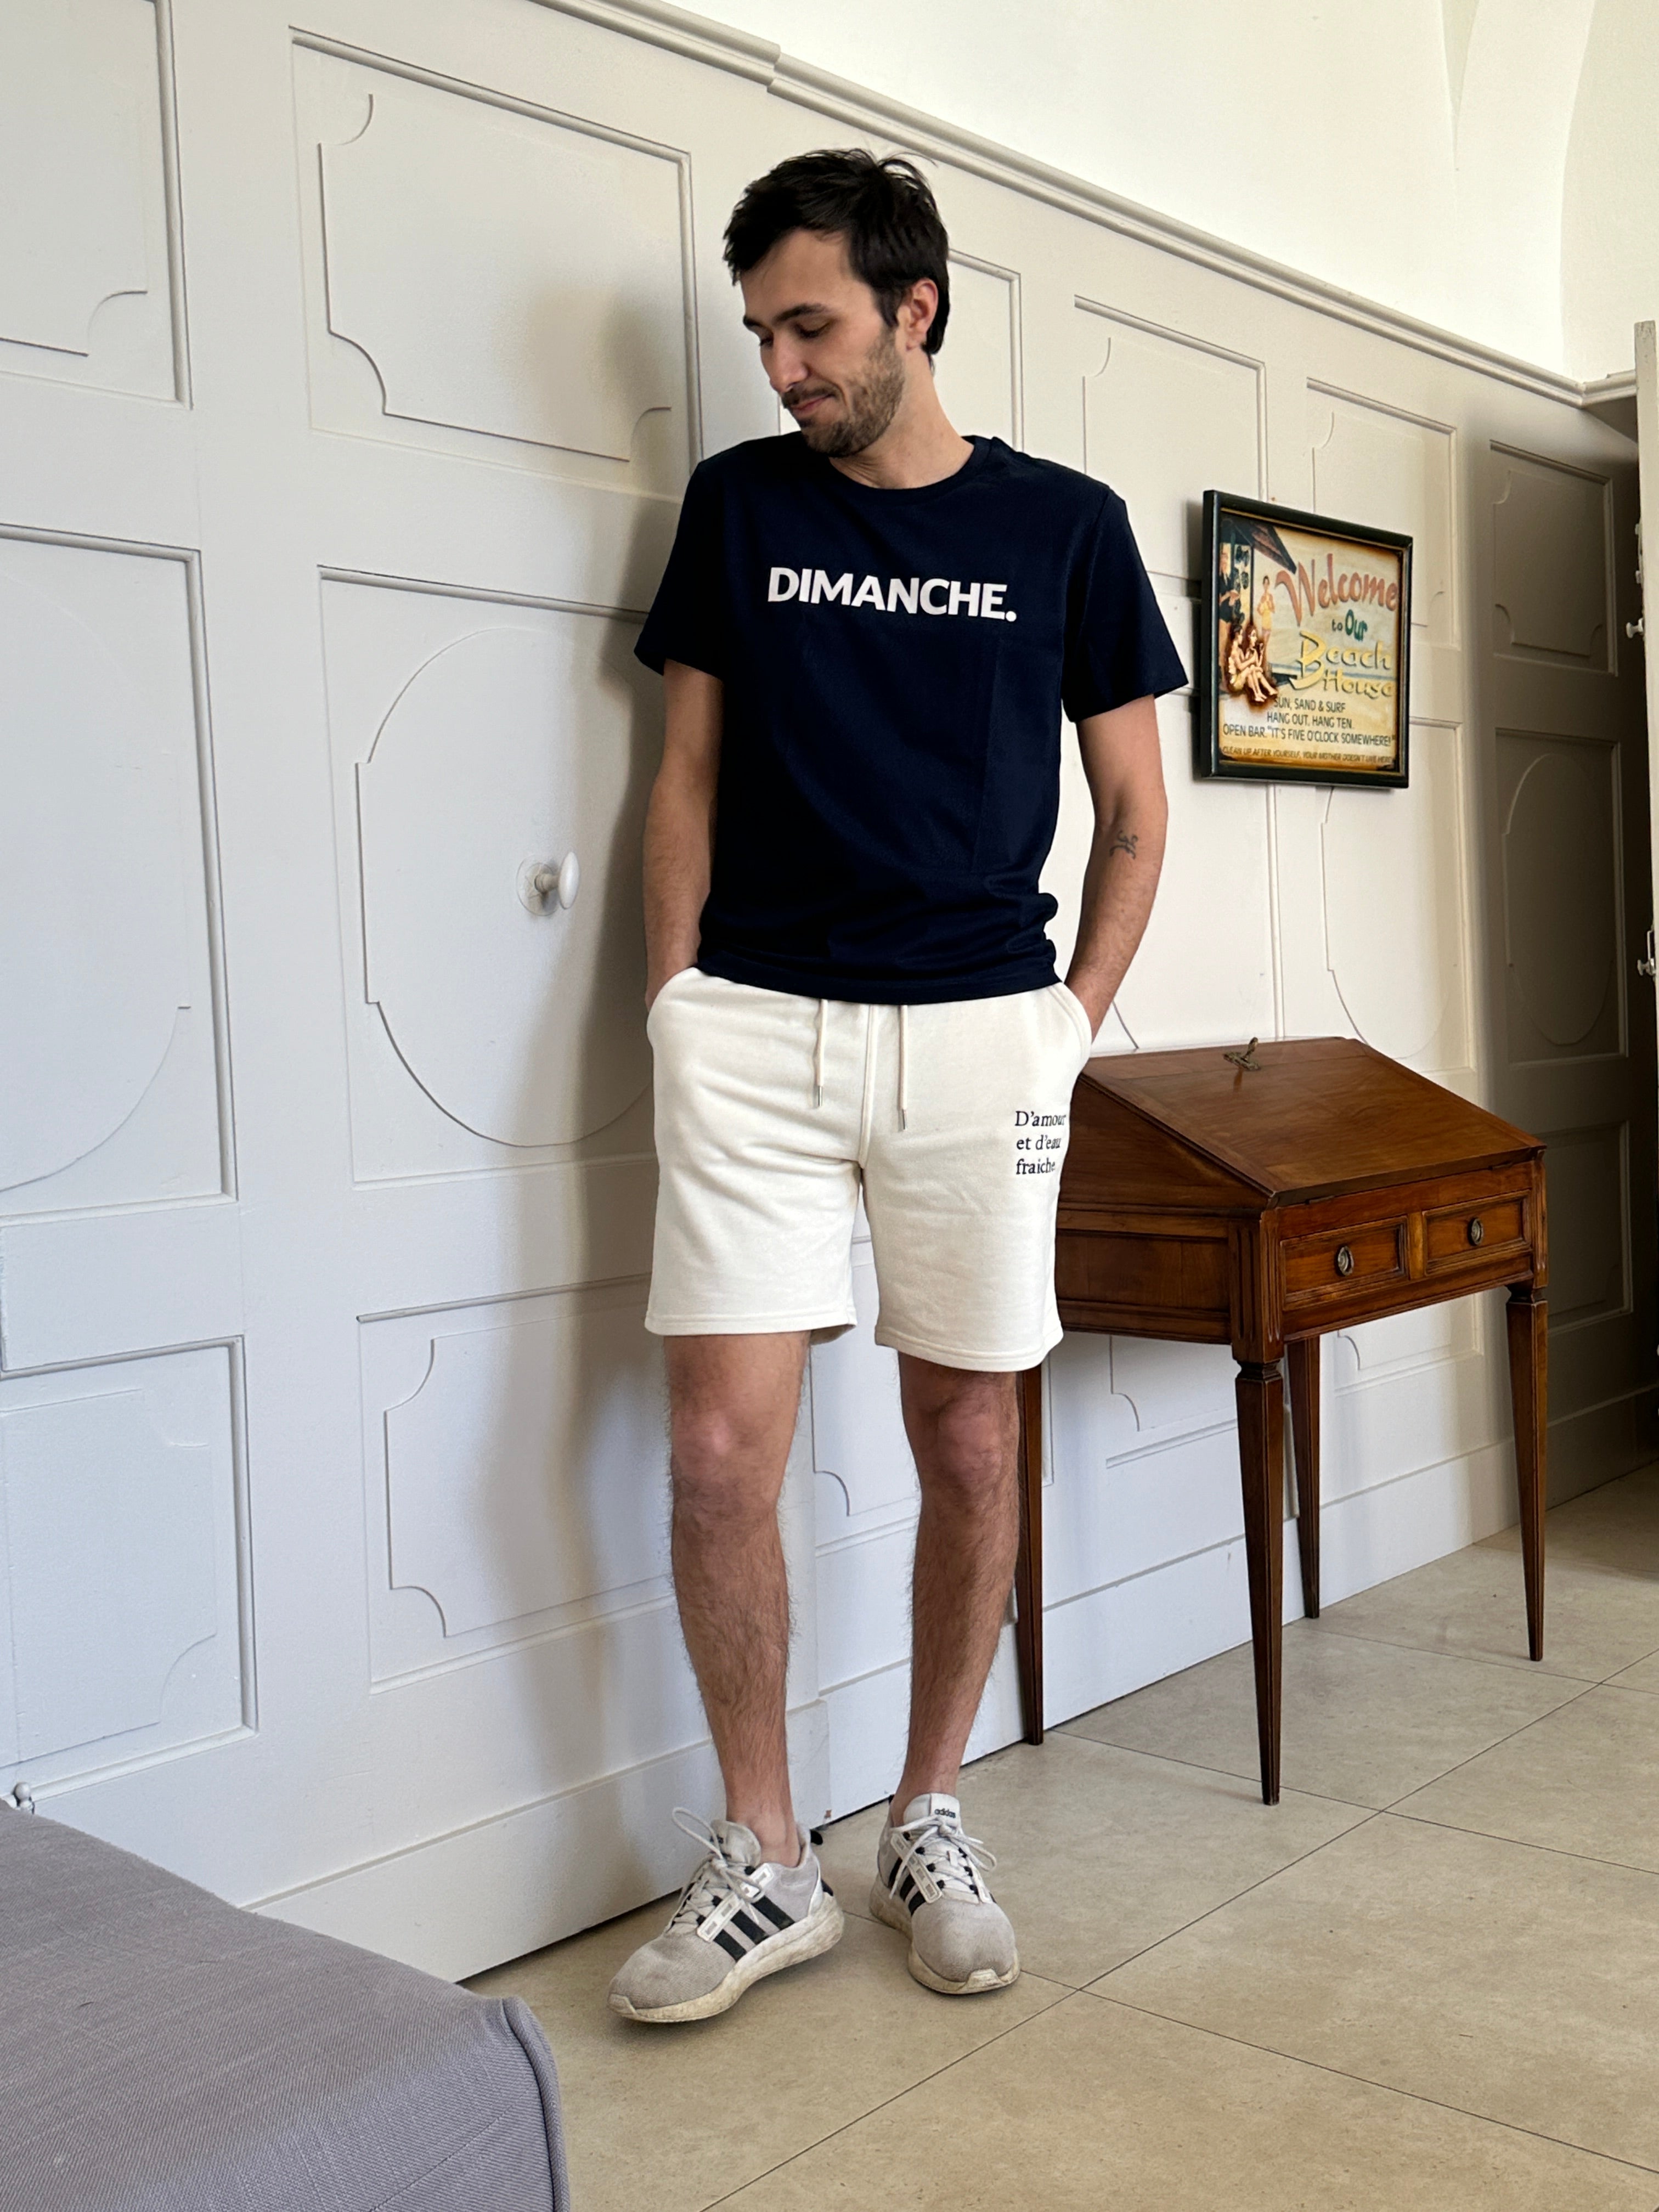 Dimanche. unisex cotton t-shirt [Color options available] - Les Petits Basics